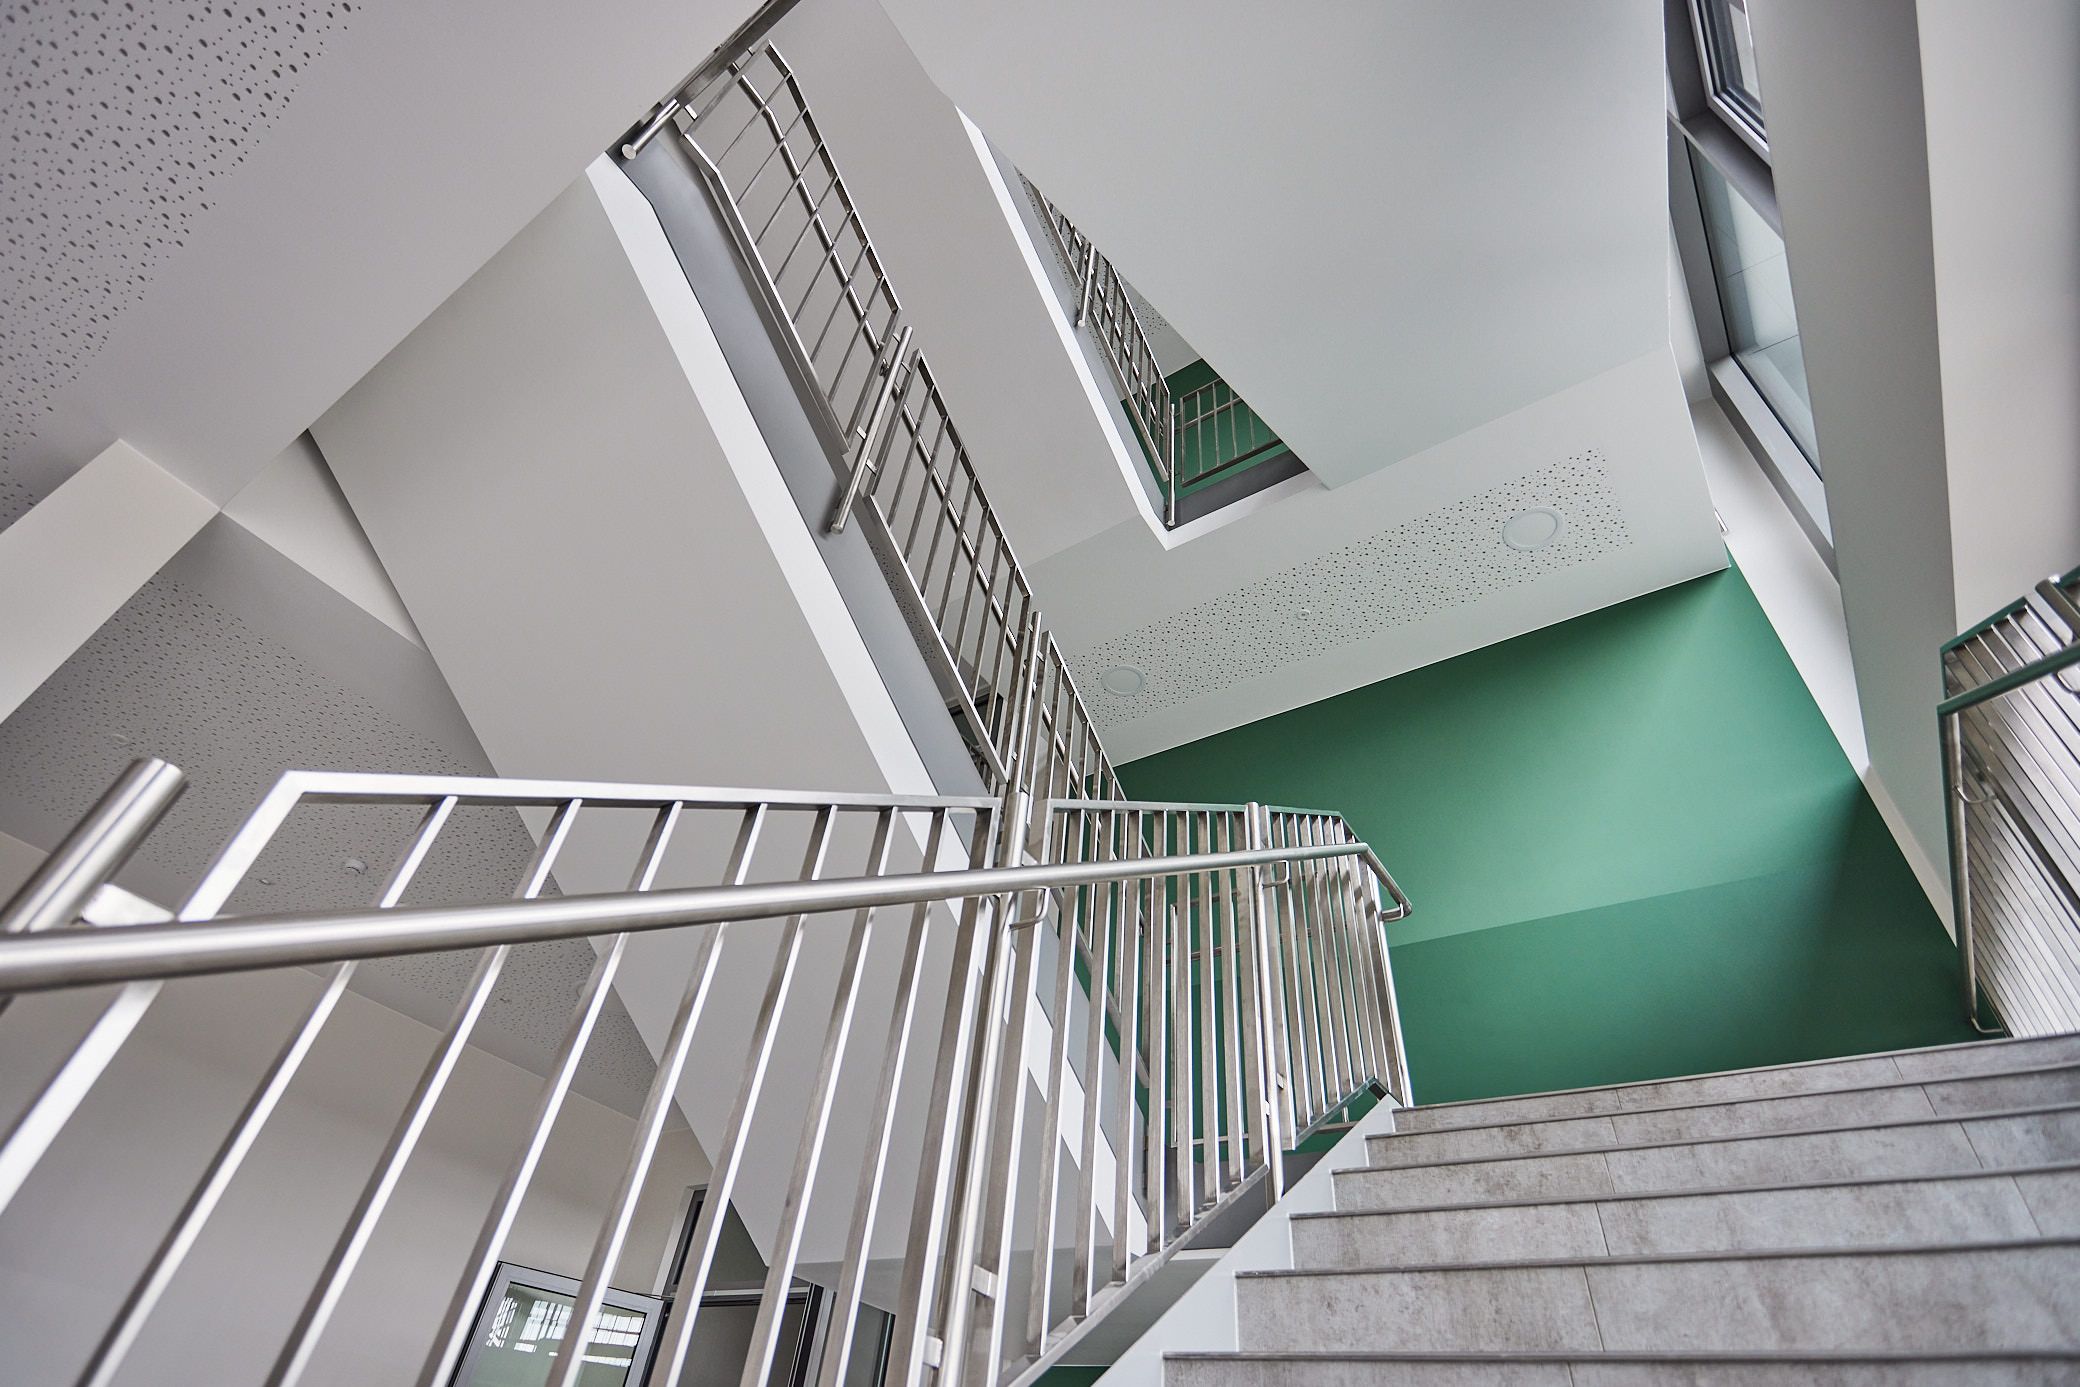 Treppenhaus der Gesamtschule Detmold. Grüne Wand. Metallhandlauf. Ein Projekt von EPU ARCHITEKTEN.